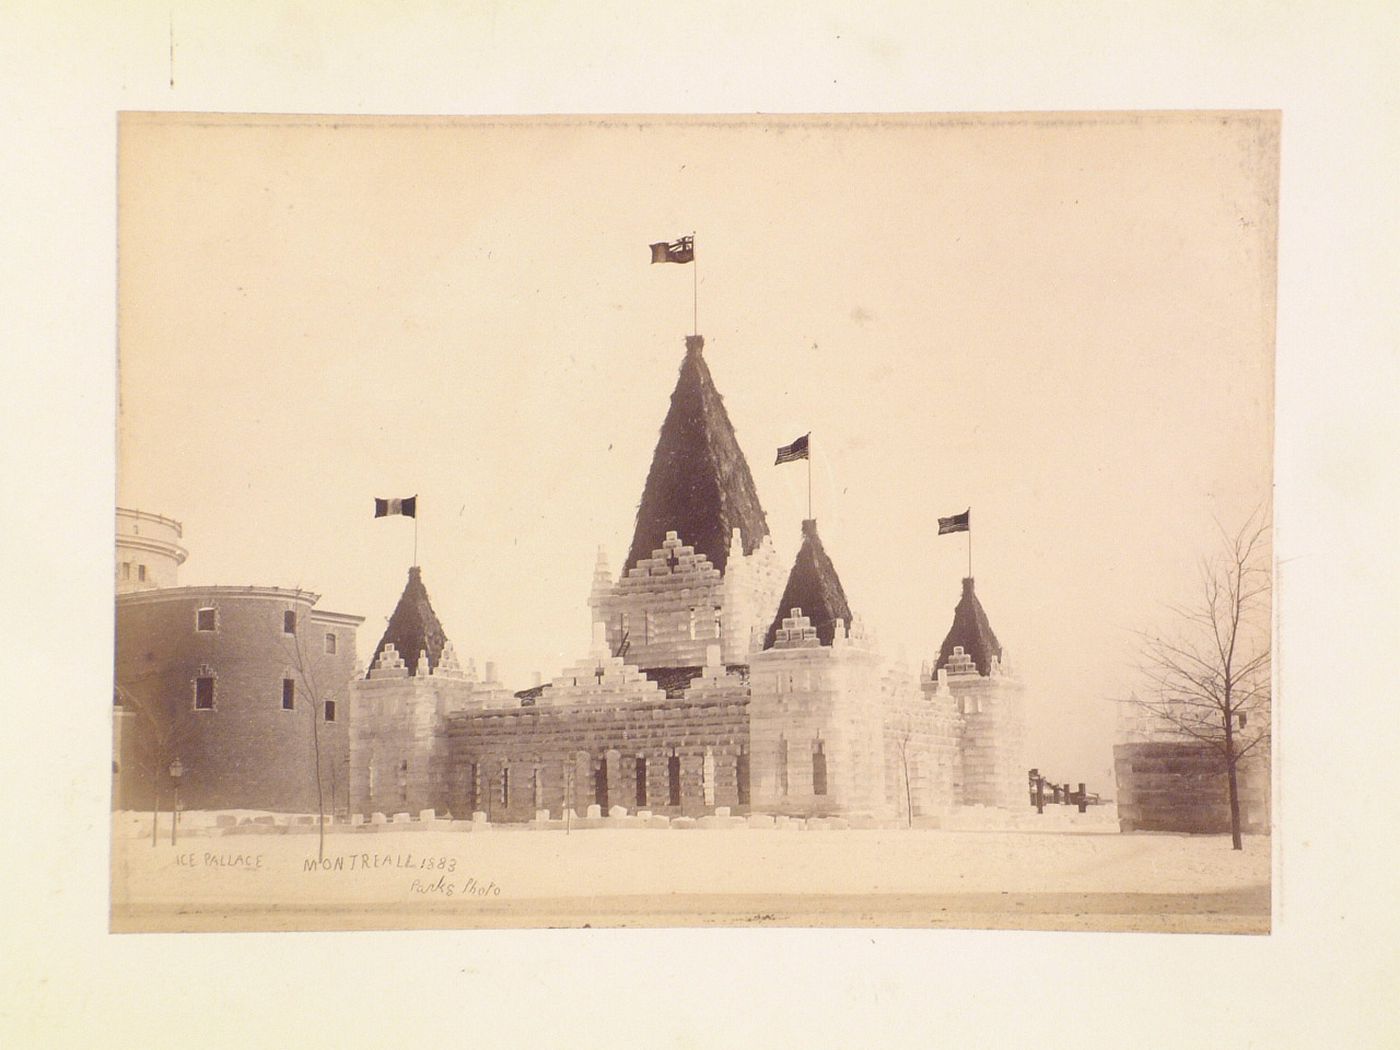 View of the Ice Palace of 1883 with the Cathédrale Saint-Jacques-le-Majeur (now the Cathédrale Marie-Reine-du-Monde) on the left, Dominion Square, Montréal, Québec